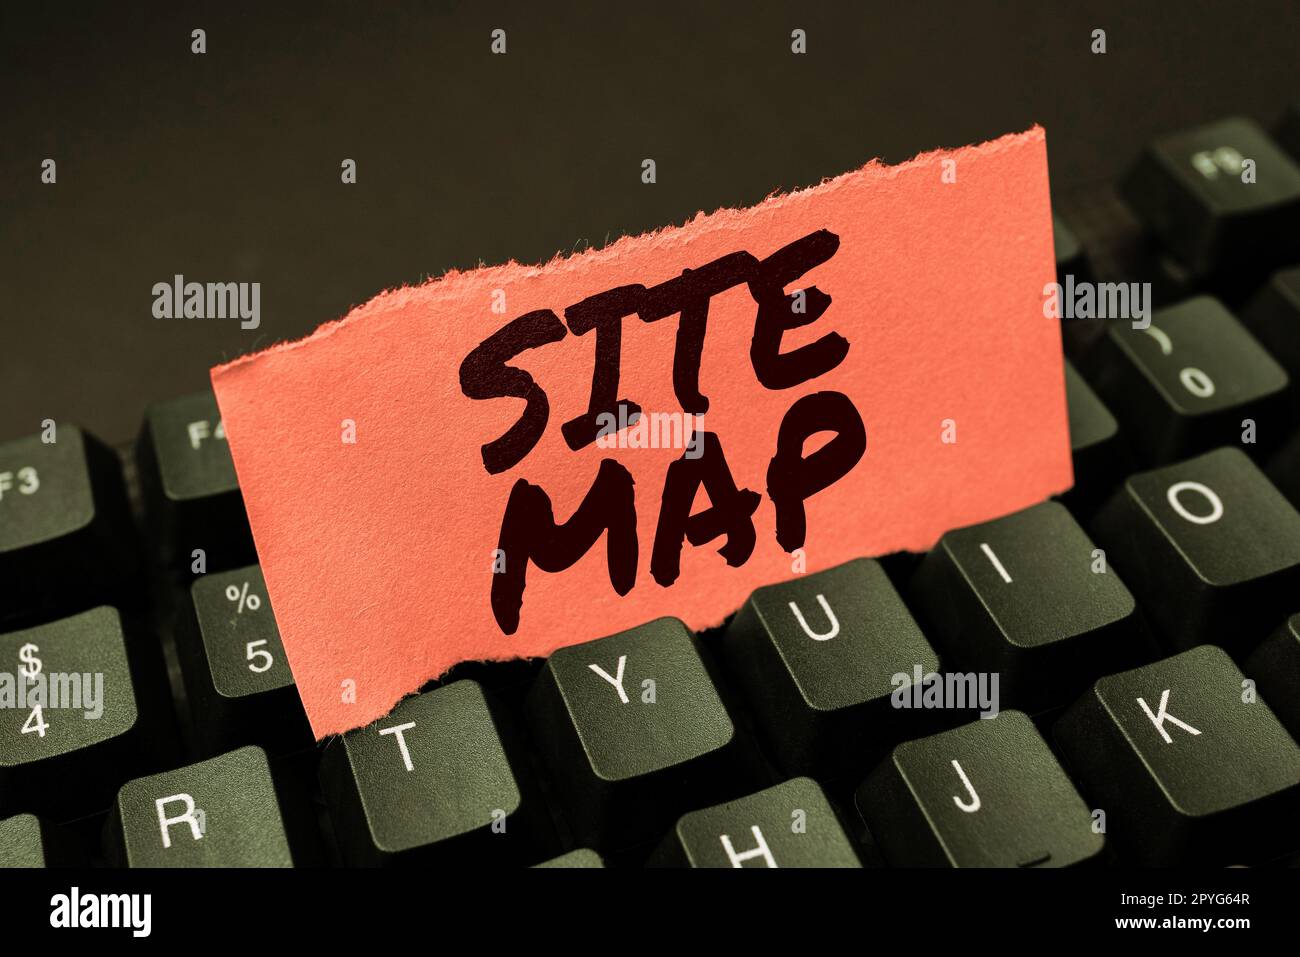 Konzeptionelle Darstellung der Sitemap. Dieses Wort soll sowohl Benutzern als auch Suchmaschinen die Navigation auf der Website erleichtern Stockfoto